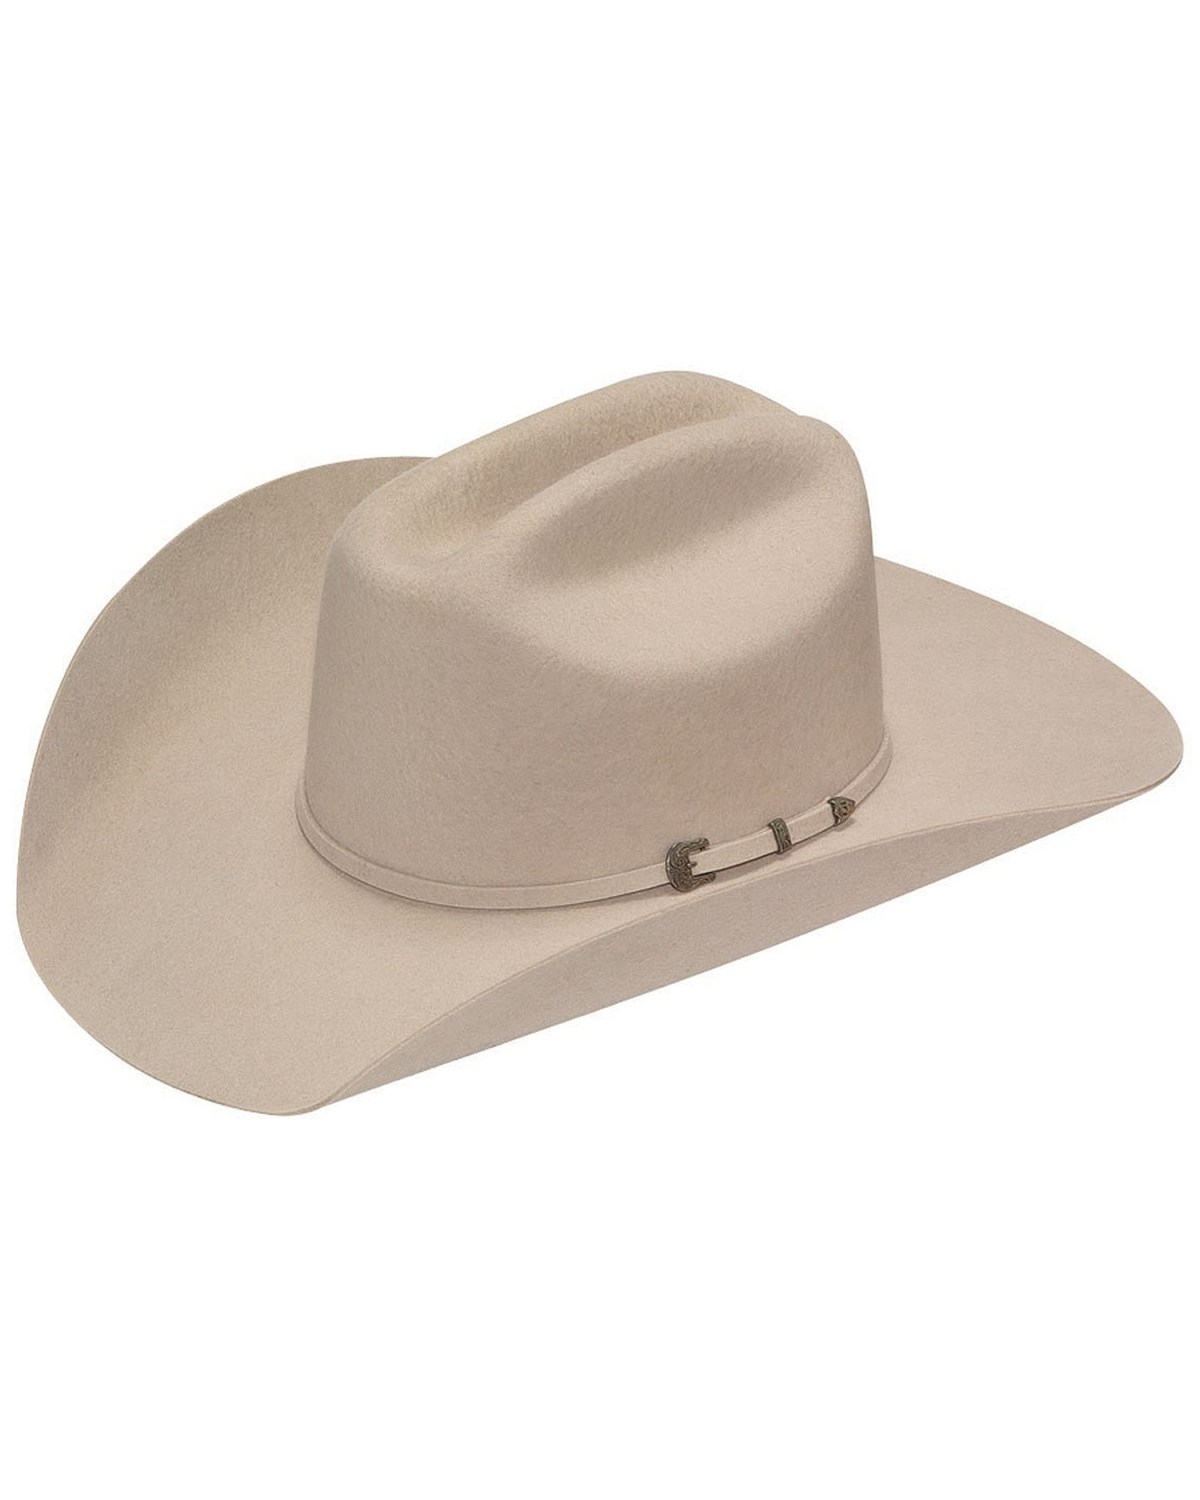 Twister Dallas 2X Felt Cowboy Hat